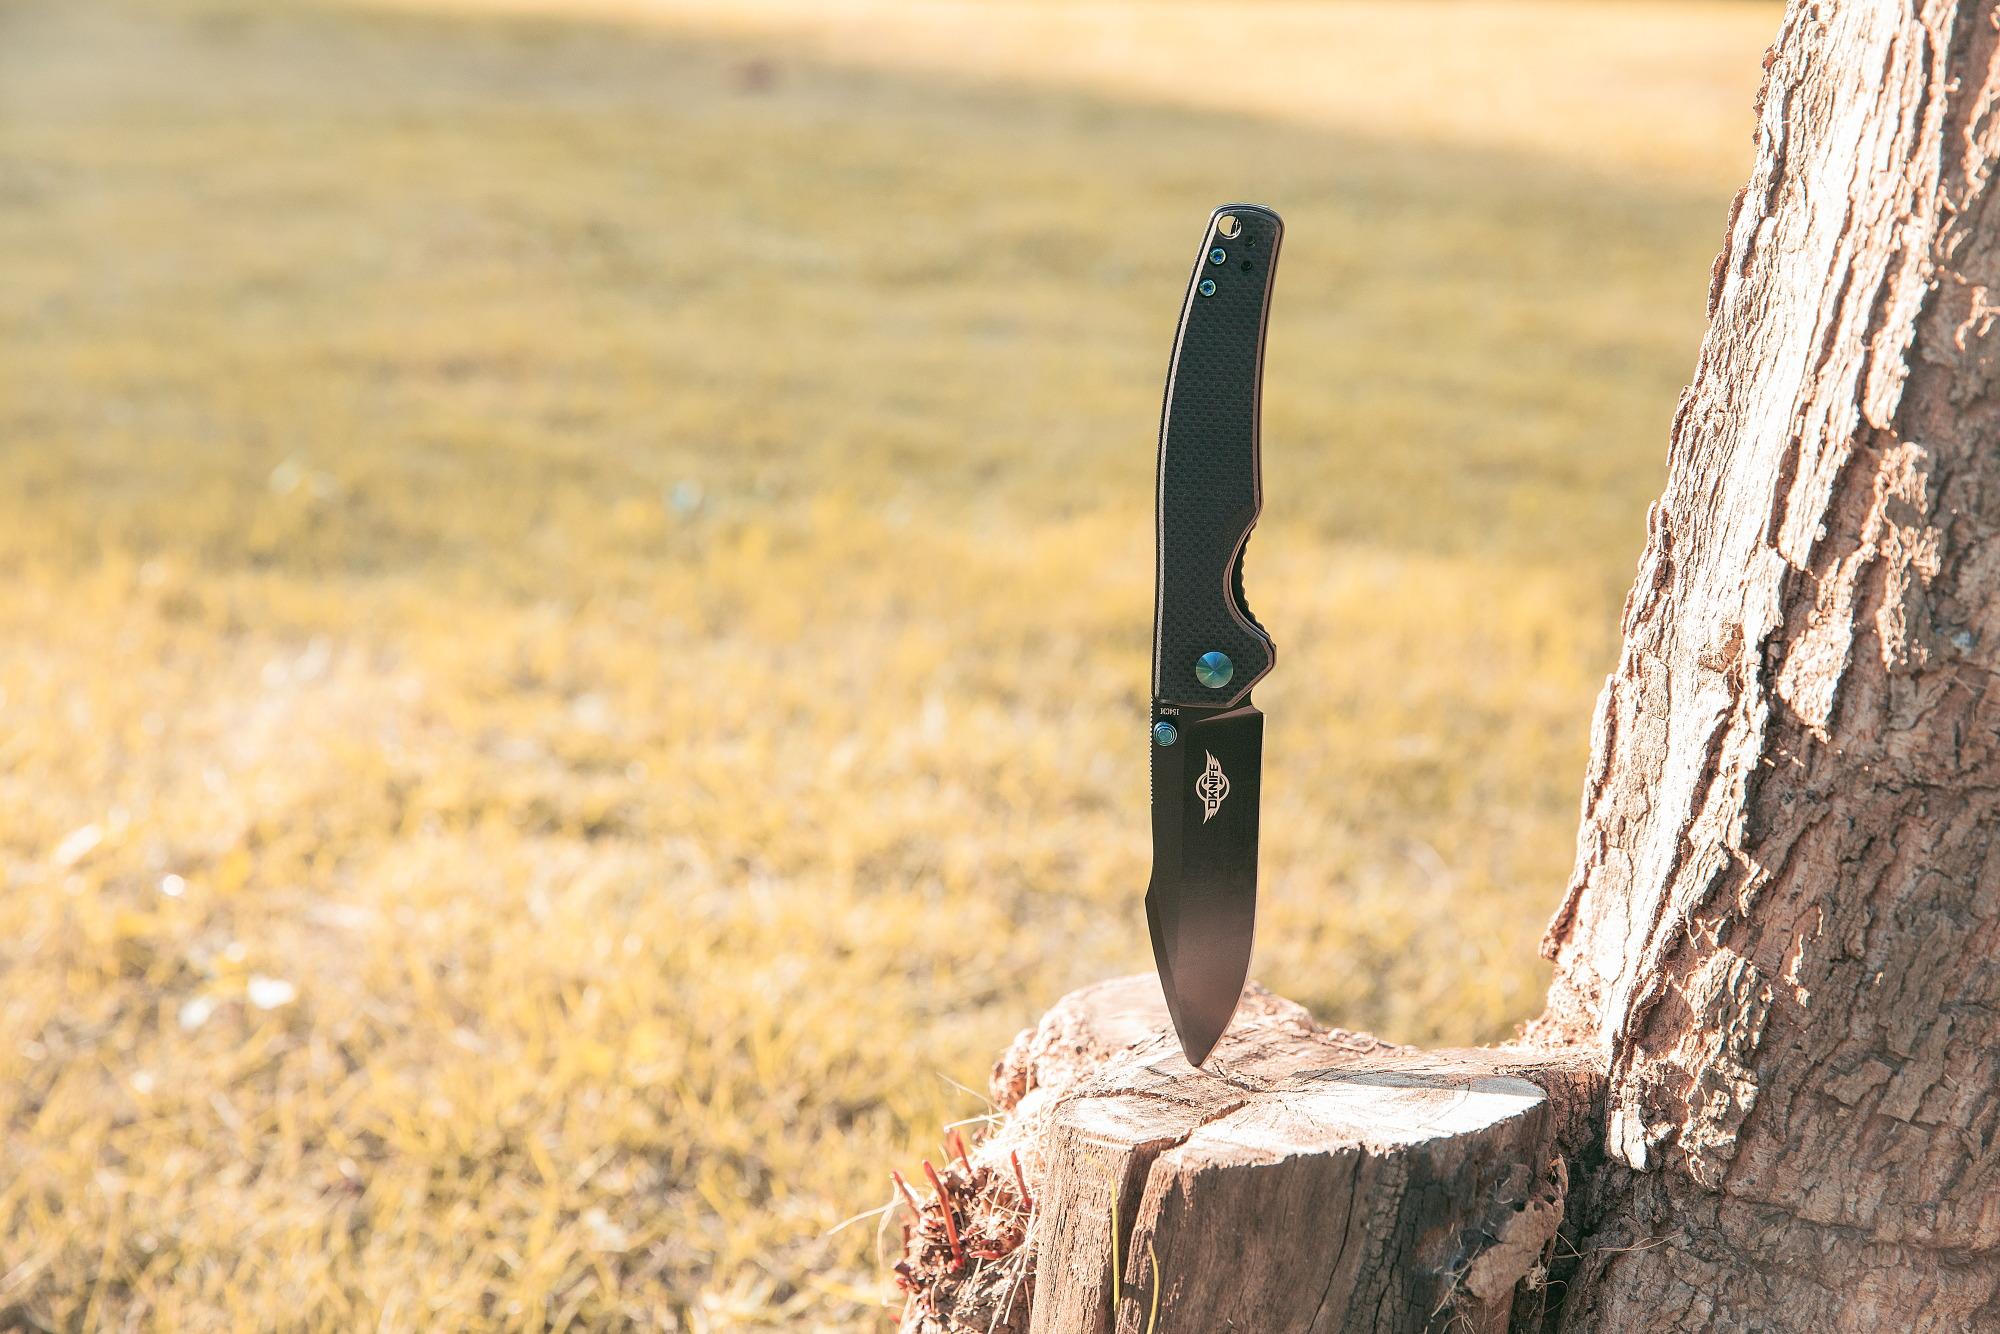 Сгъваем нож Oknife Beagle - 154CM неръждаема стомана